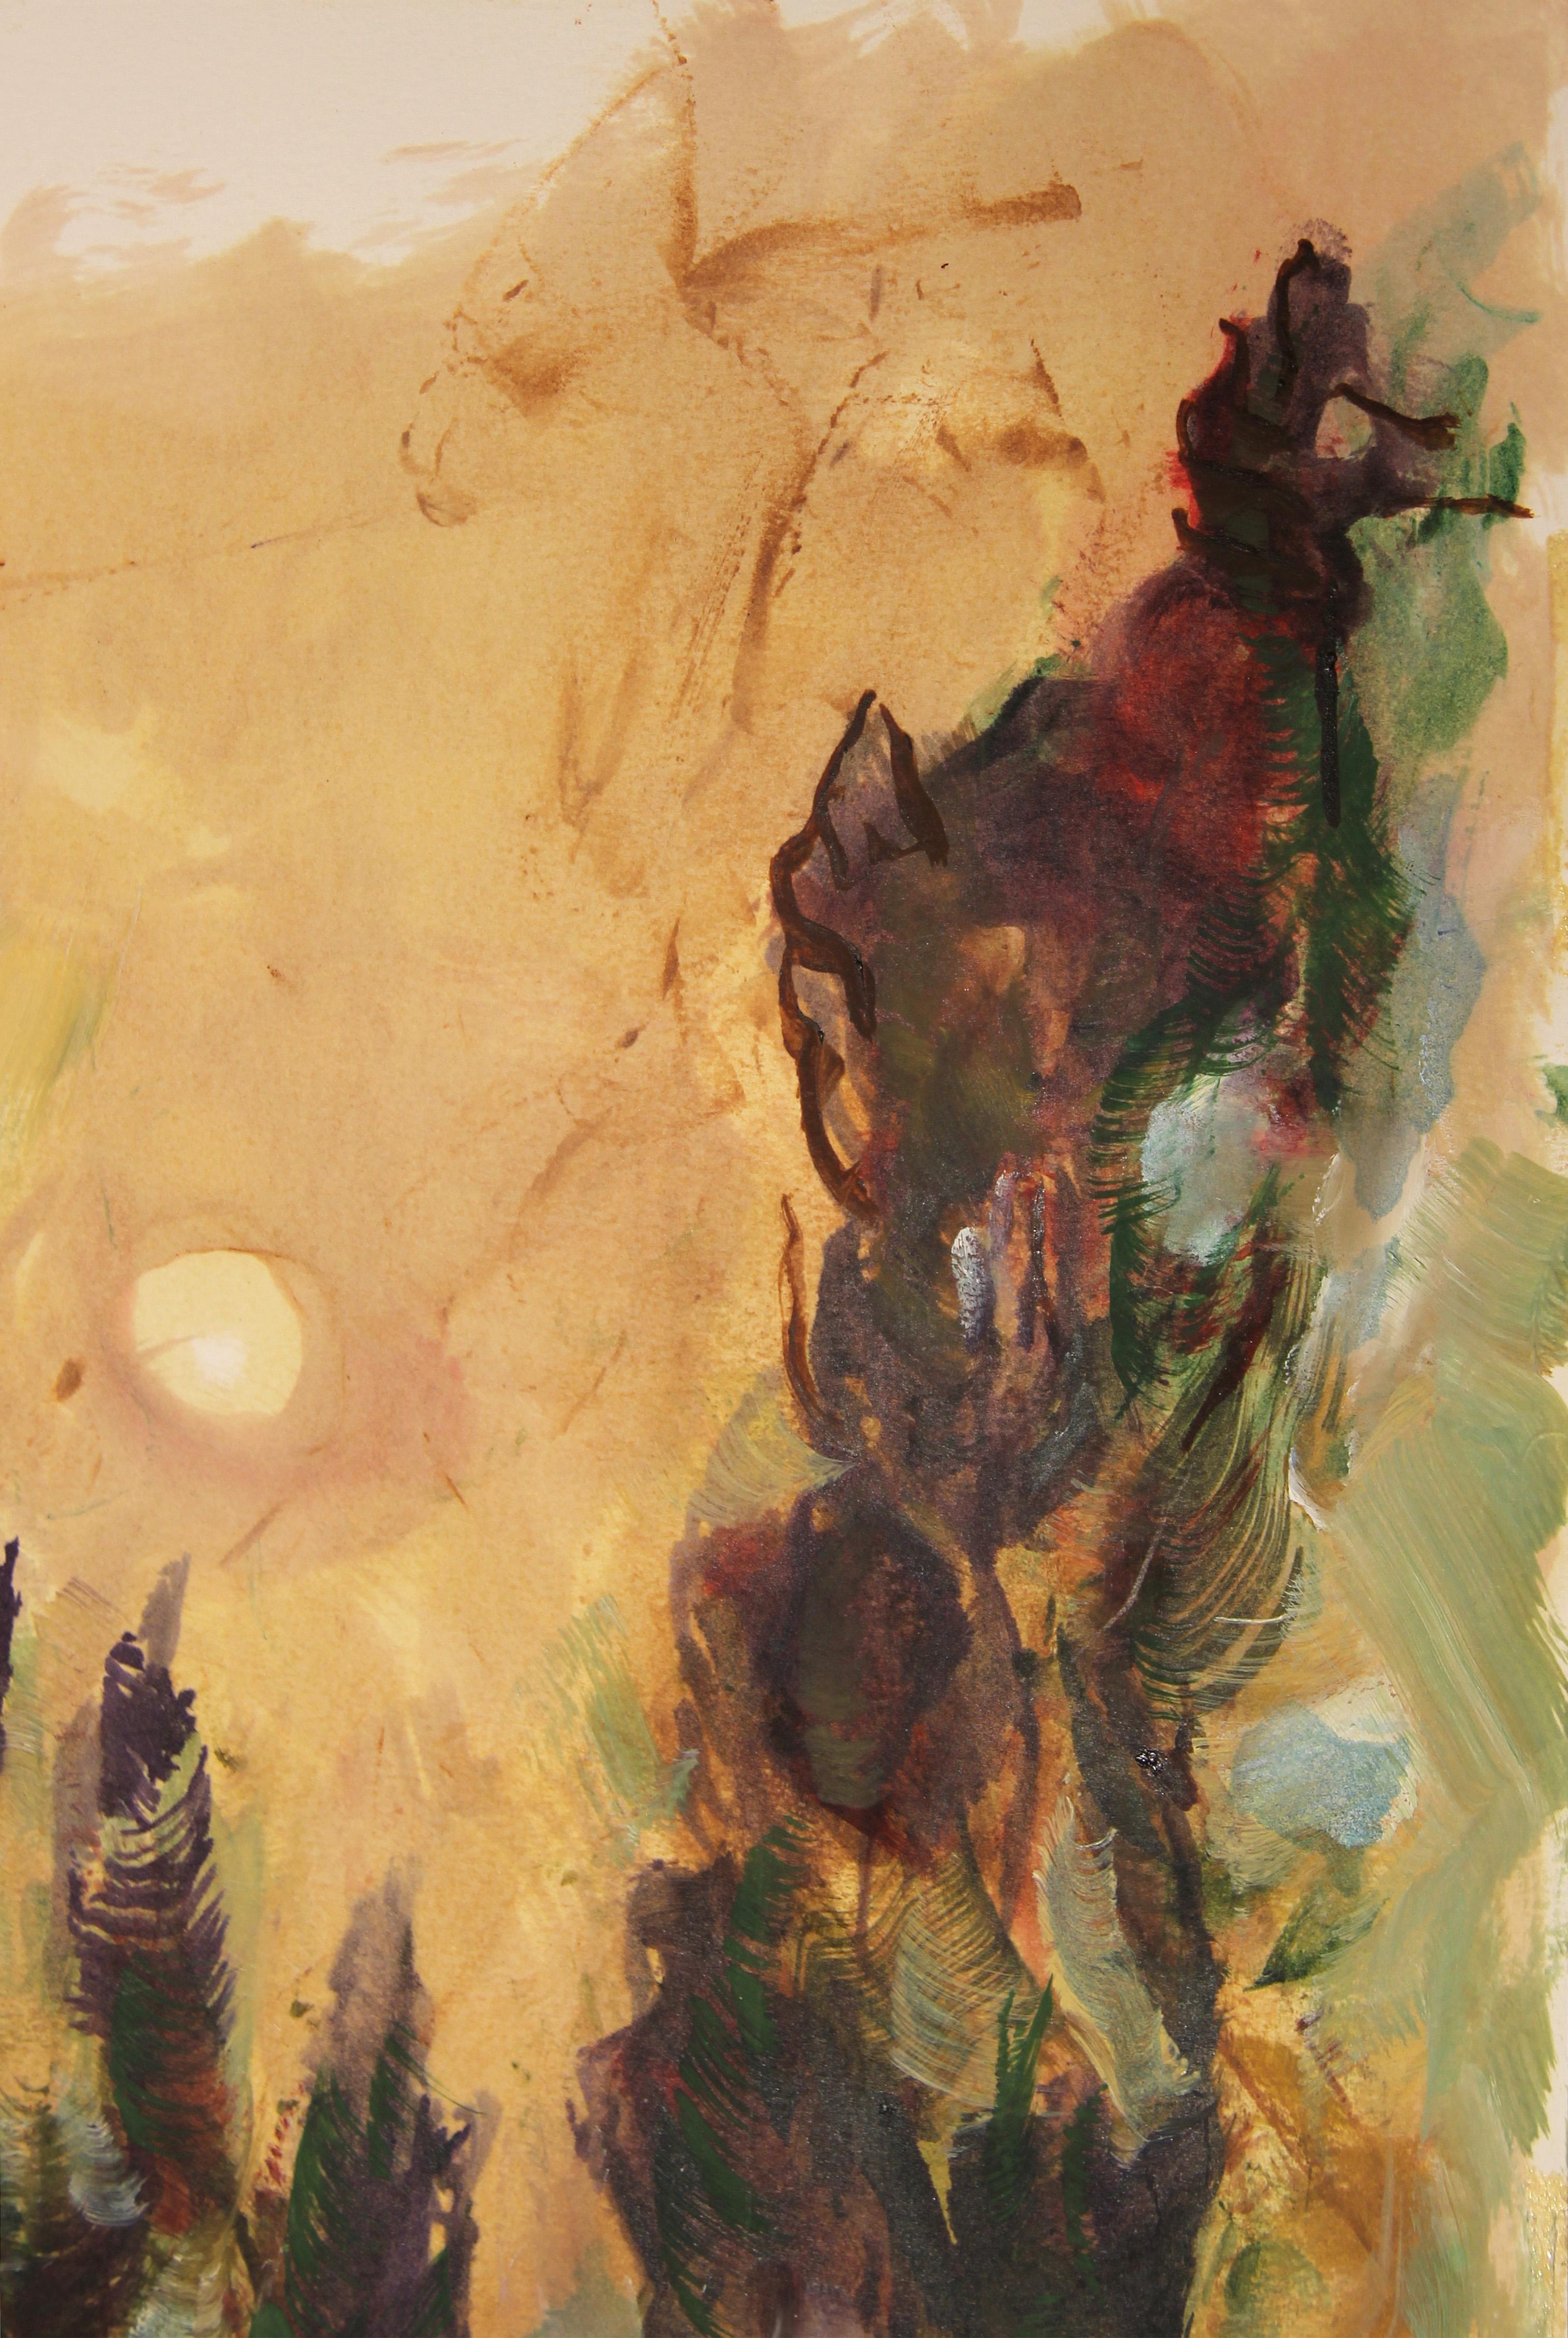 Modernes modernes abstraktes grünes und lilafarbenes Landschaftsgemälde der amerikanischen Künstlerin Jane Tate. Das Werk zeigt einen wilden Wald mit Bäumen und Pinseln, in der die Sonne wunderschön in der Mitte eingerahmt ist. Signiert in der